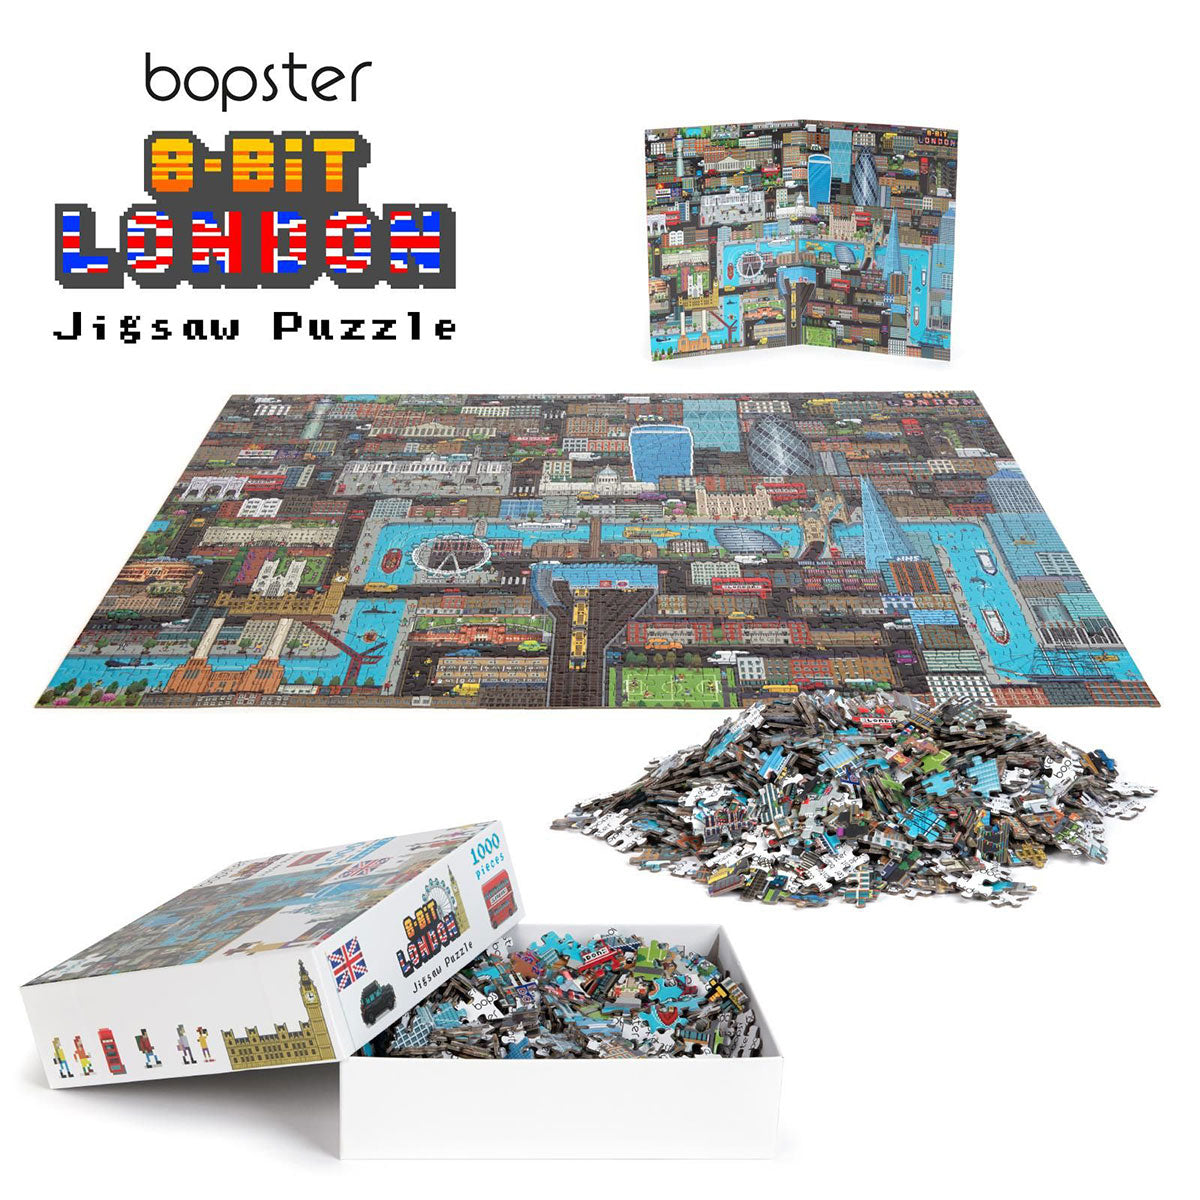 Bopster 8-Bit London Jigsaw Puzzle - 1000 Pieces 5